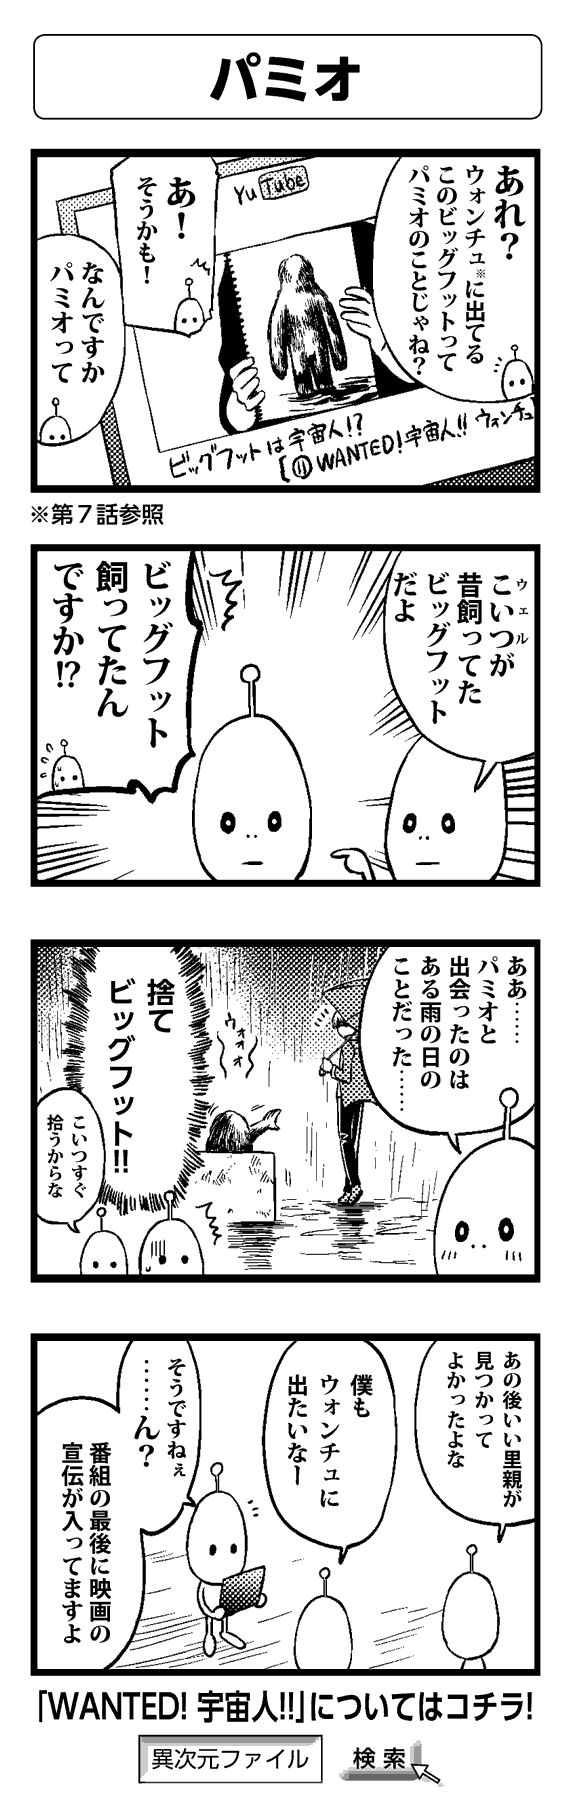 パミオ - 四コマ漫画ノンフィクション #008